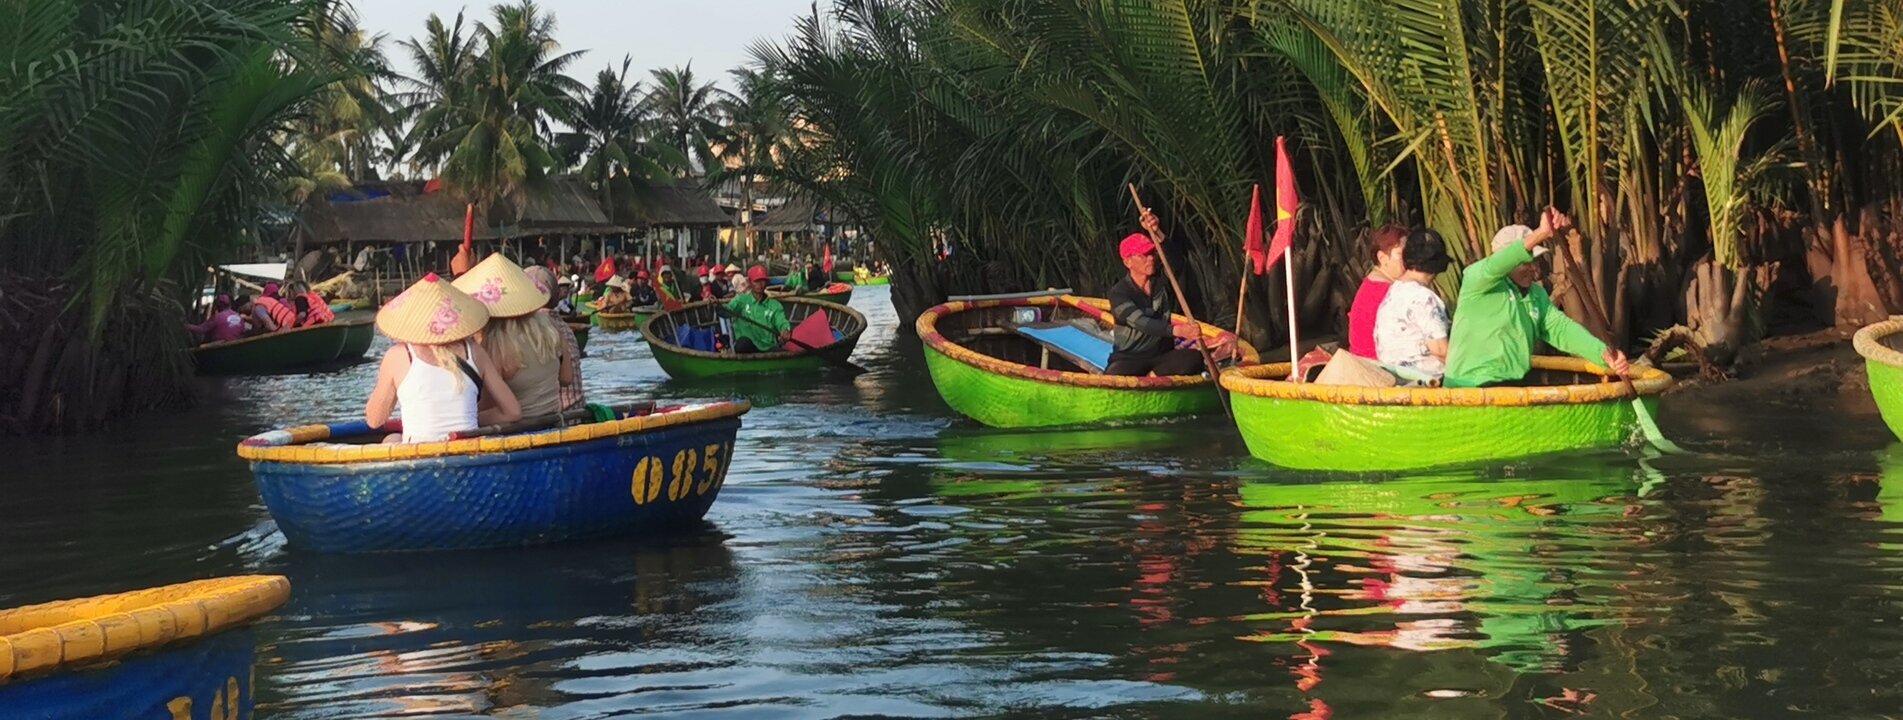 Vietnam Thailand Laos Reiseroute 4 wochen